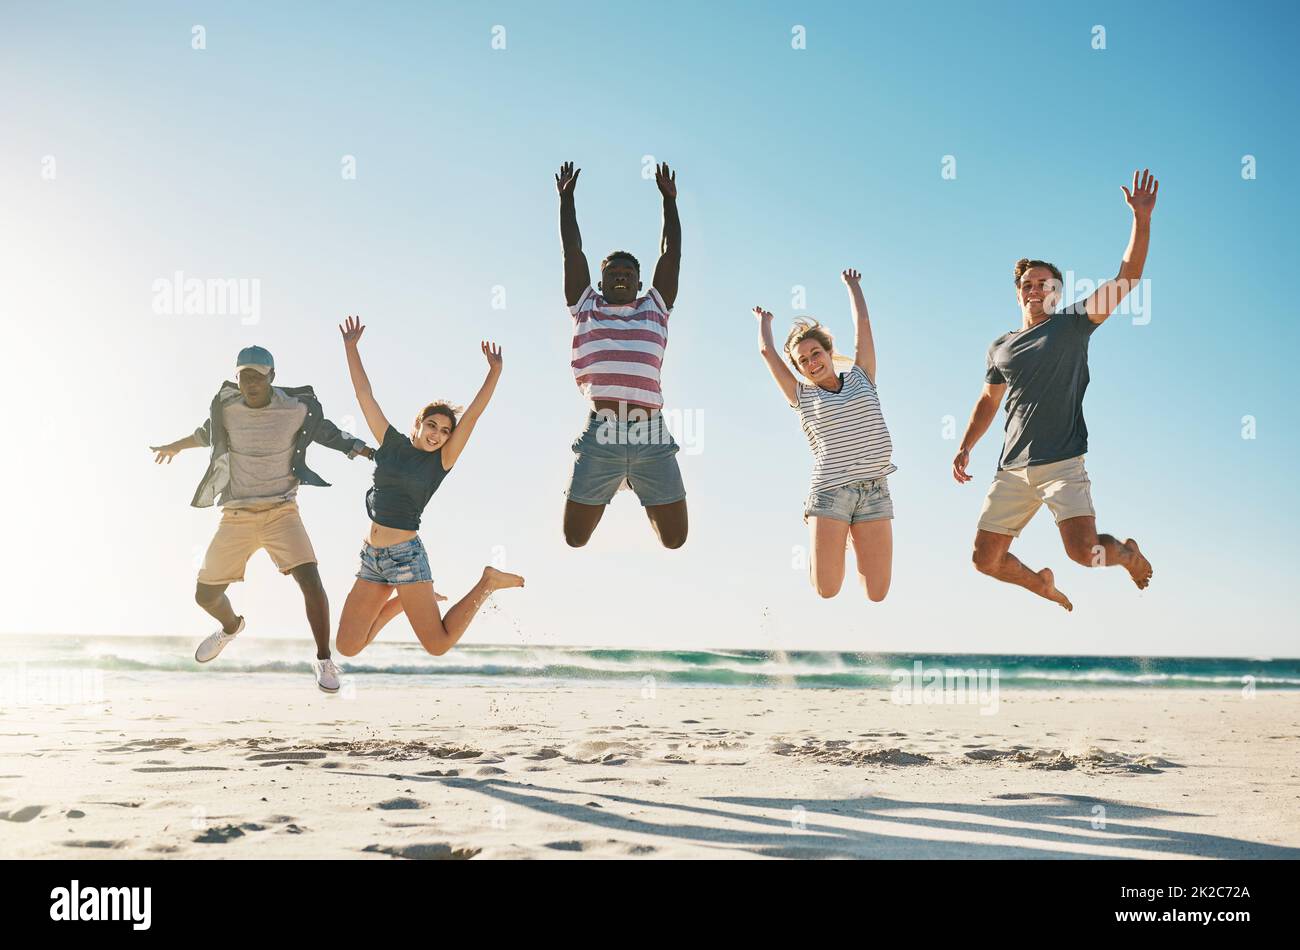 Lösen Sie sich mit Ihren besten Freunden. Aufnahme einer Gruppe junger Freunde, die am Strand begeistert in die Luft springen. Stockfoto